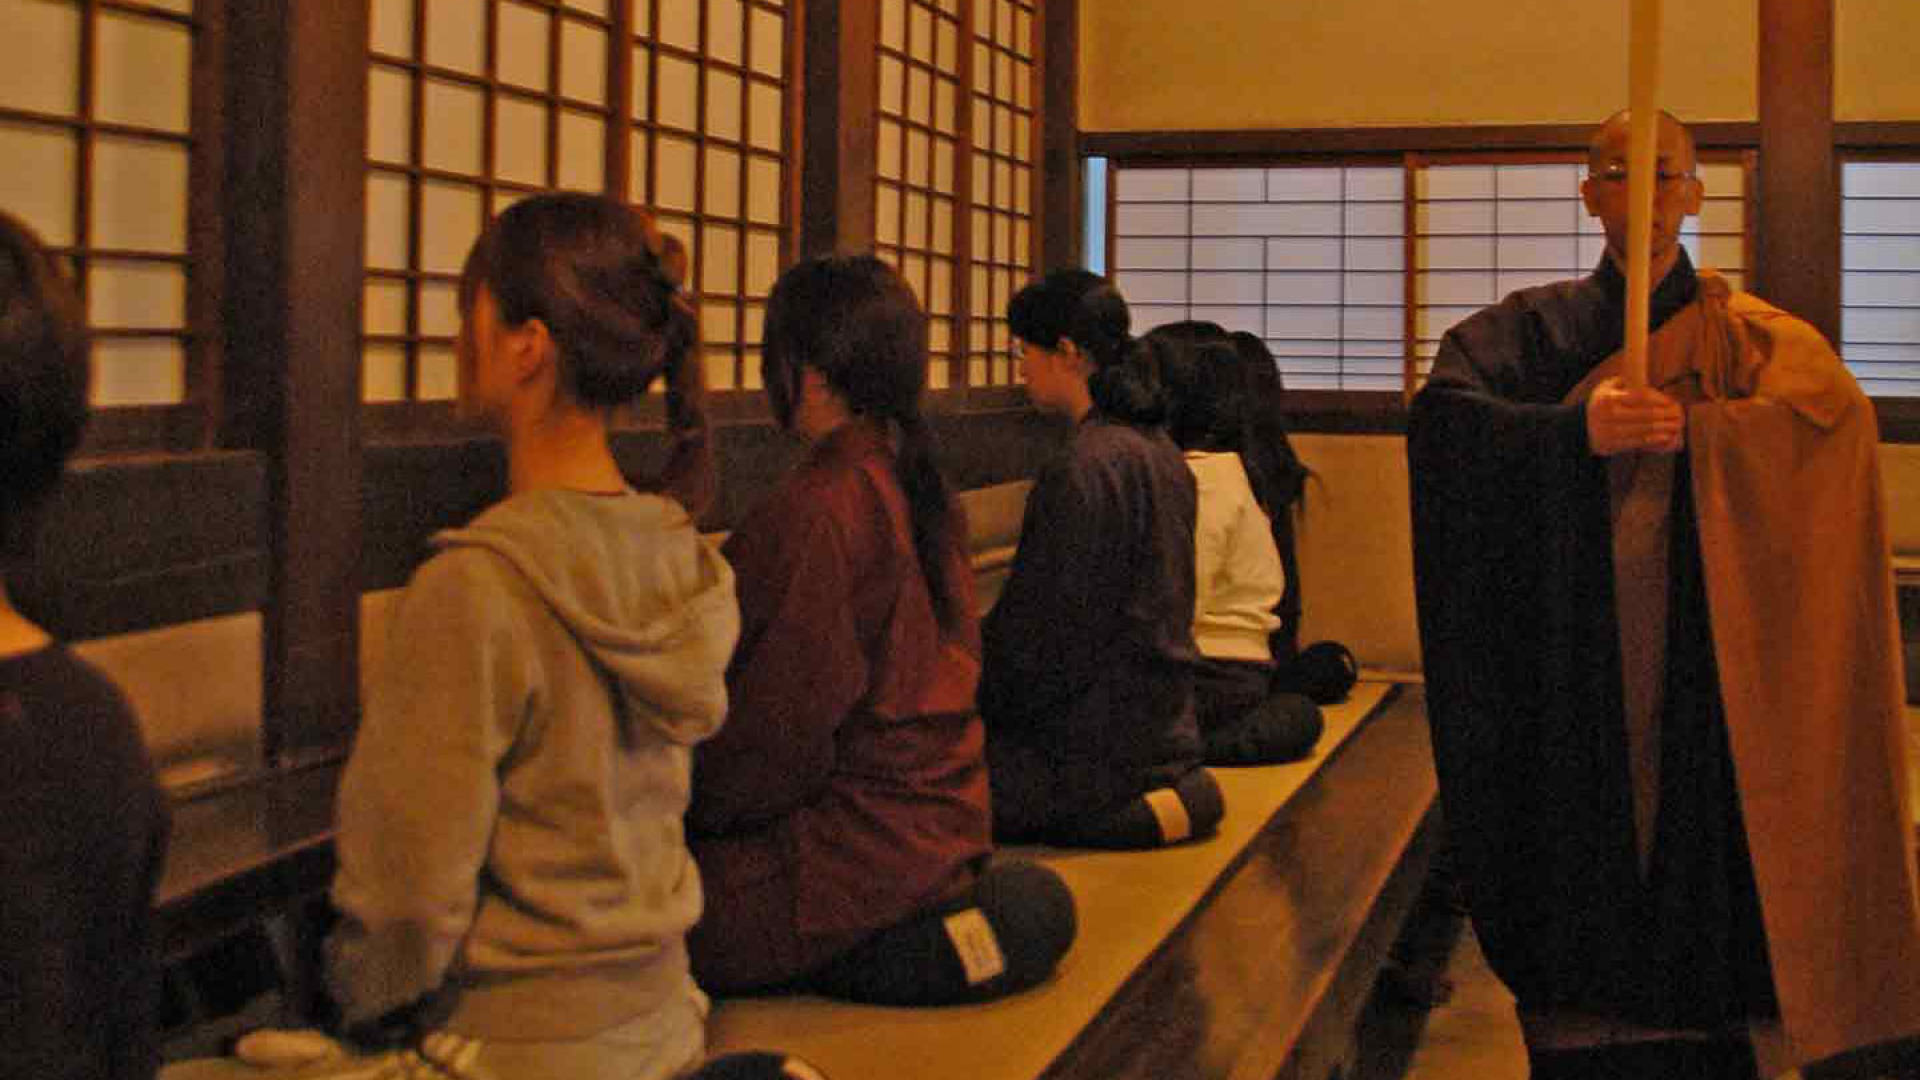 Soji-ji Temple